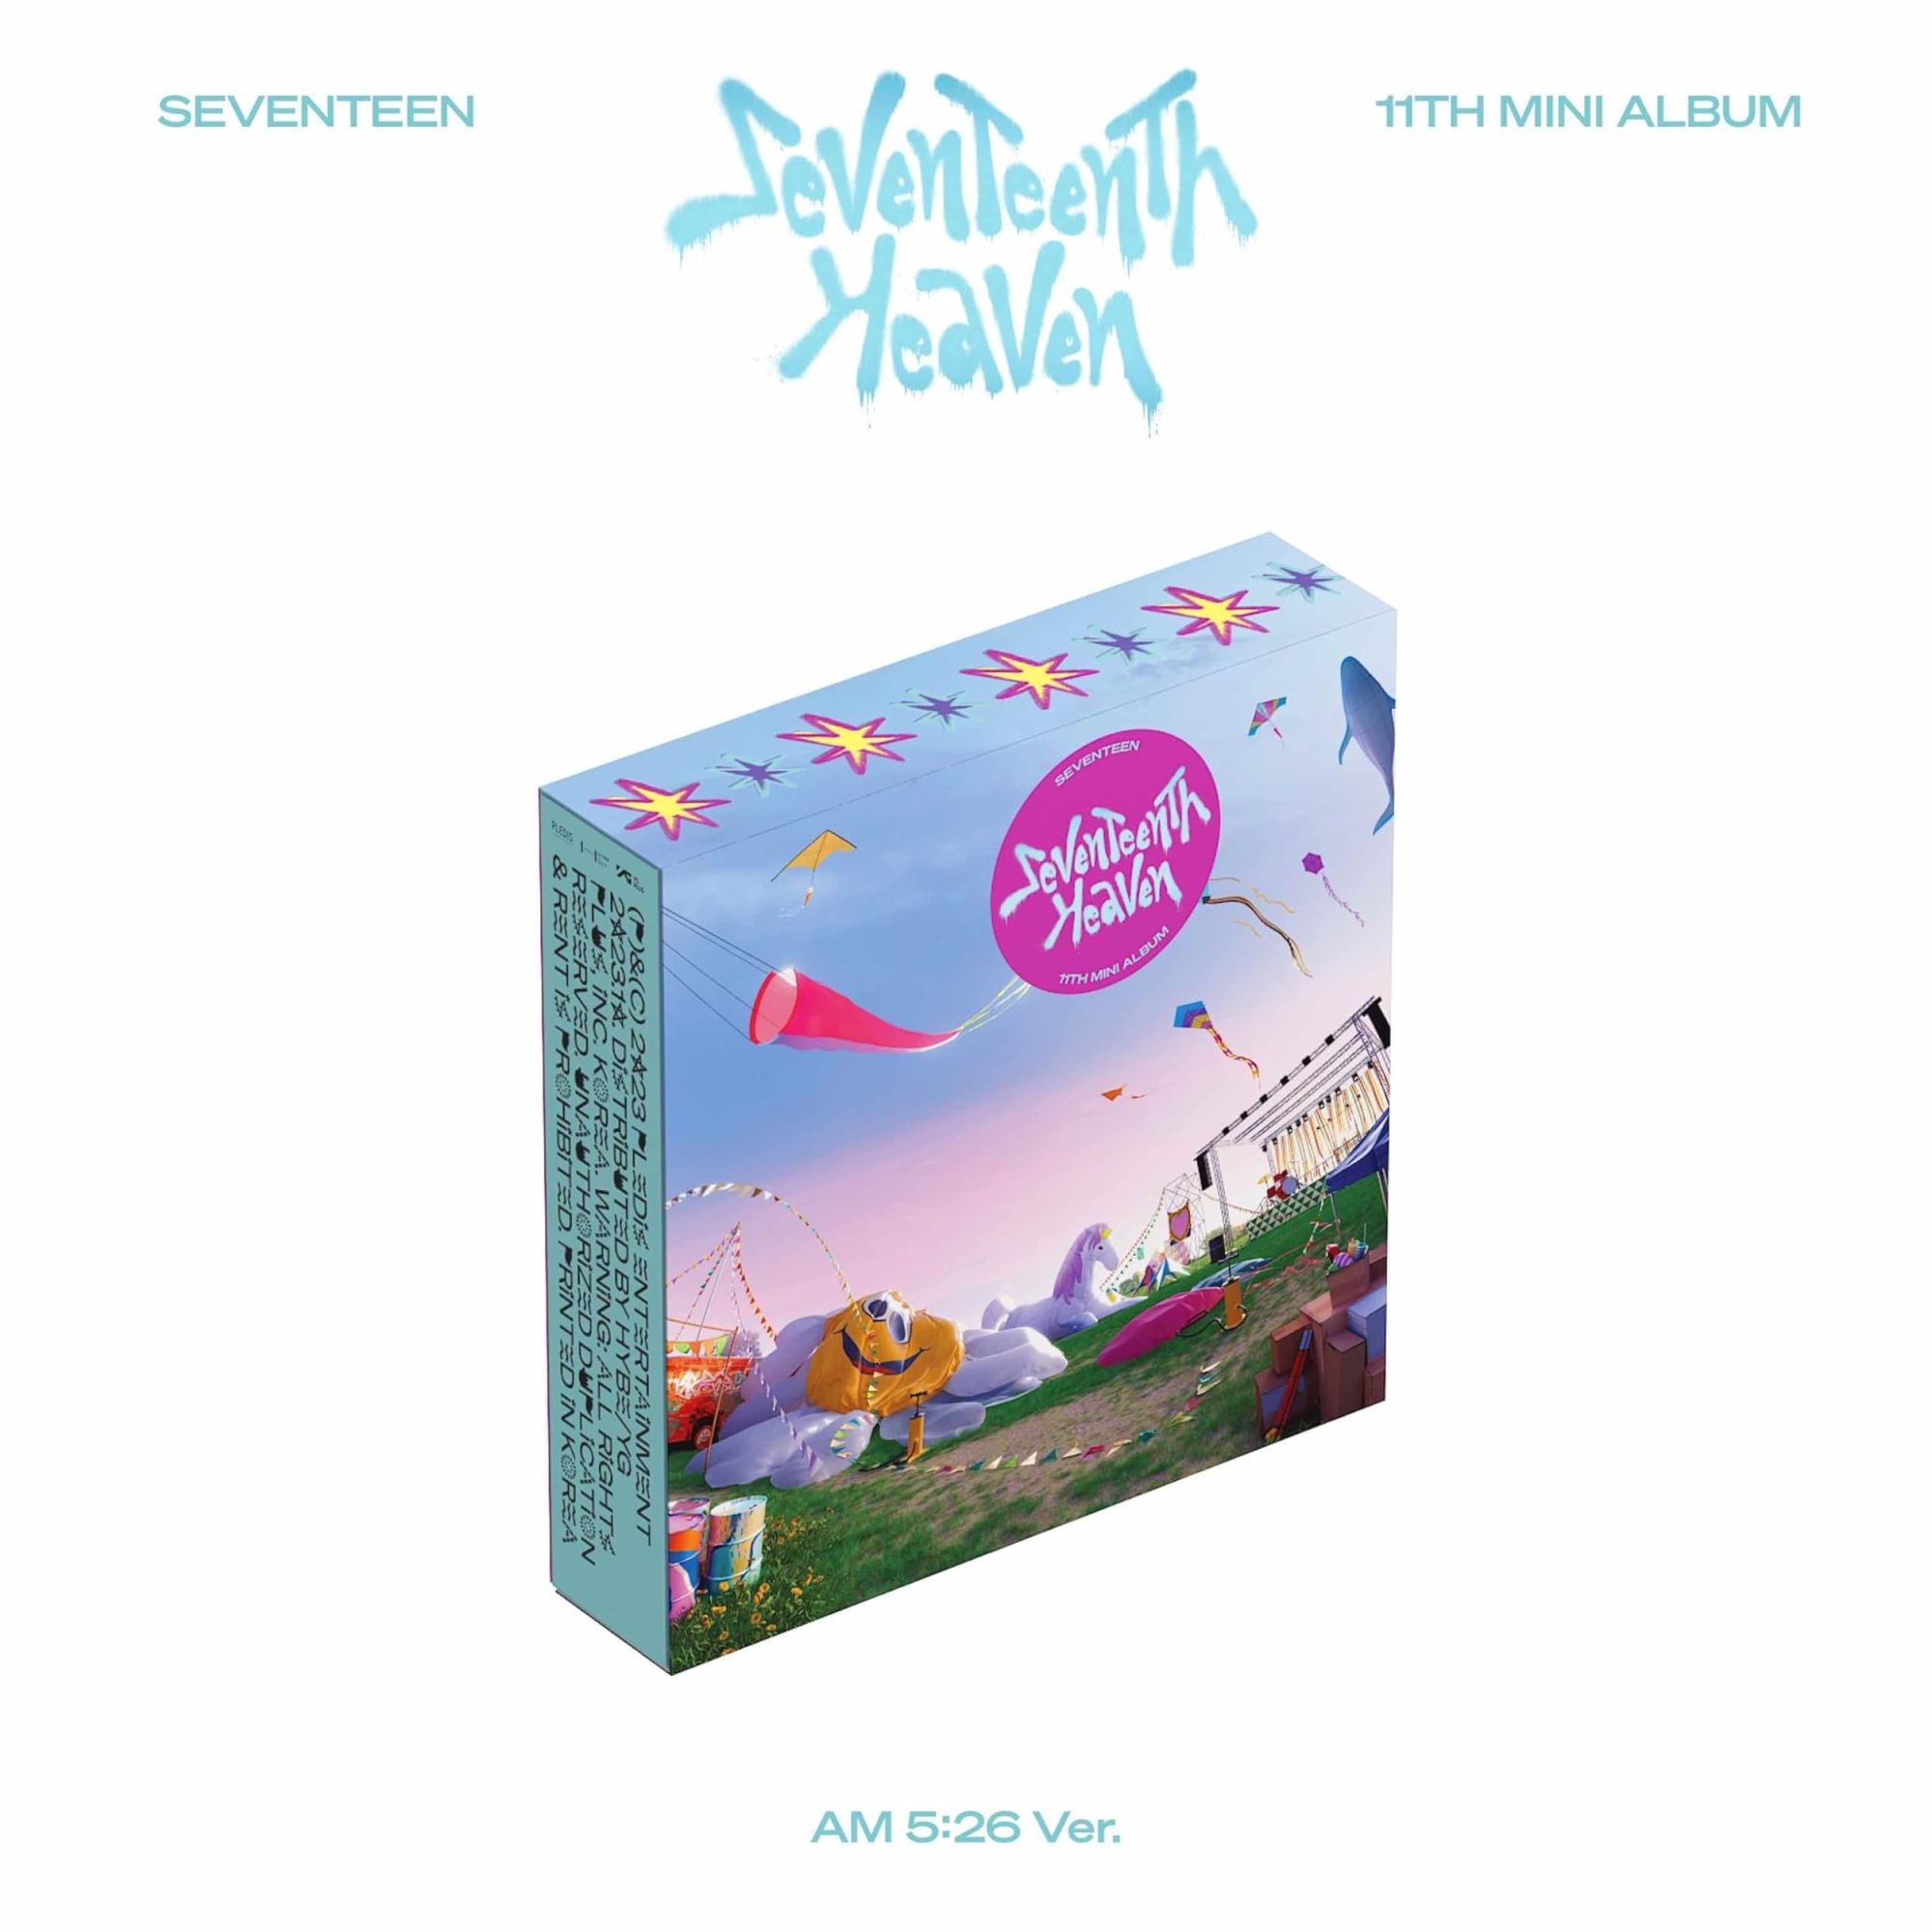 Audio Cd Seventeen - 11Th Mini Album 'Seventeenth Heaven' Am 5:26 Ver NUOVO SIGILLATO, EDIZIONE DEL 27/10/2023 SUBITO DISPONIBILE